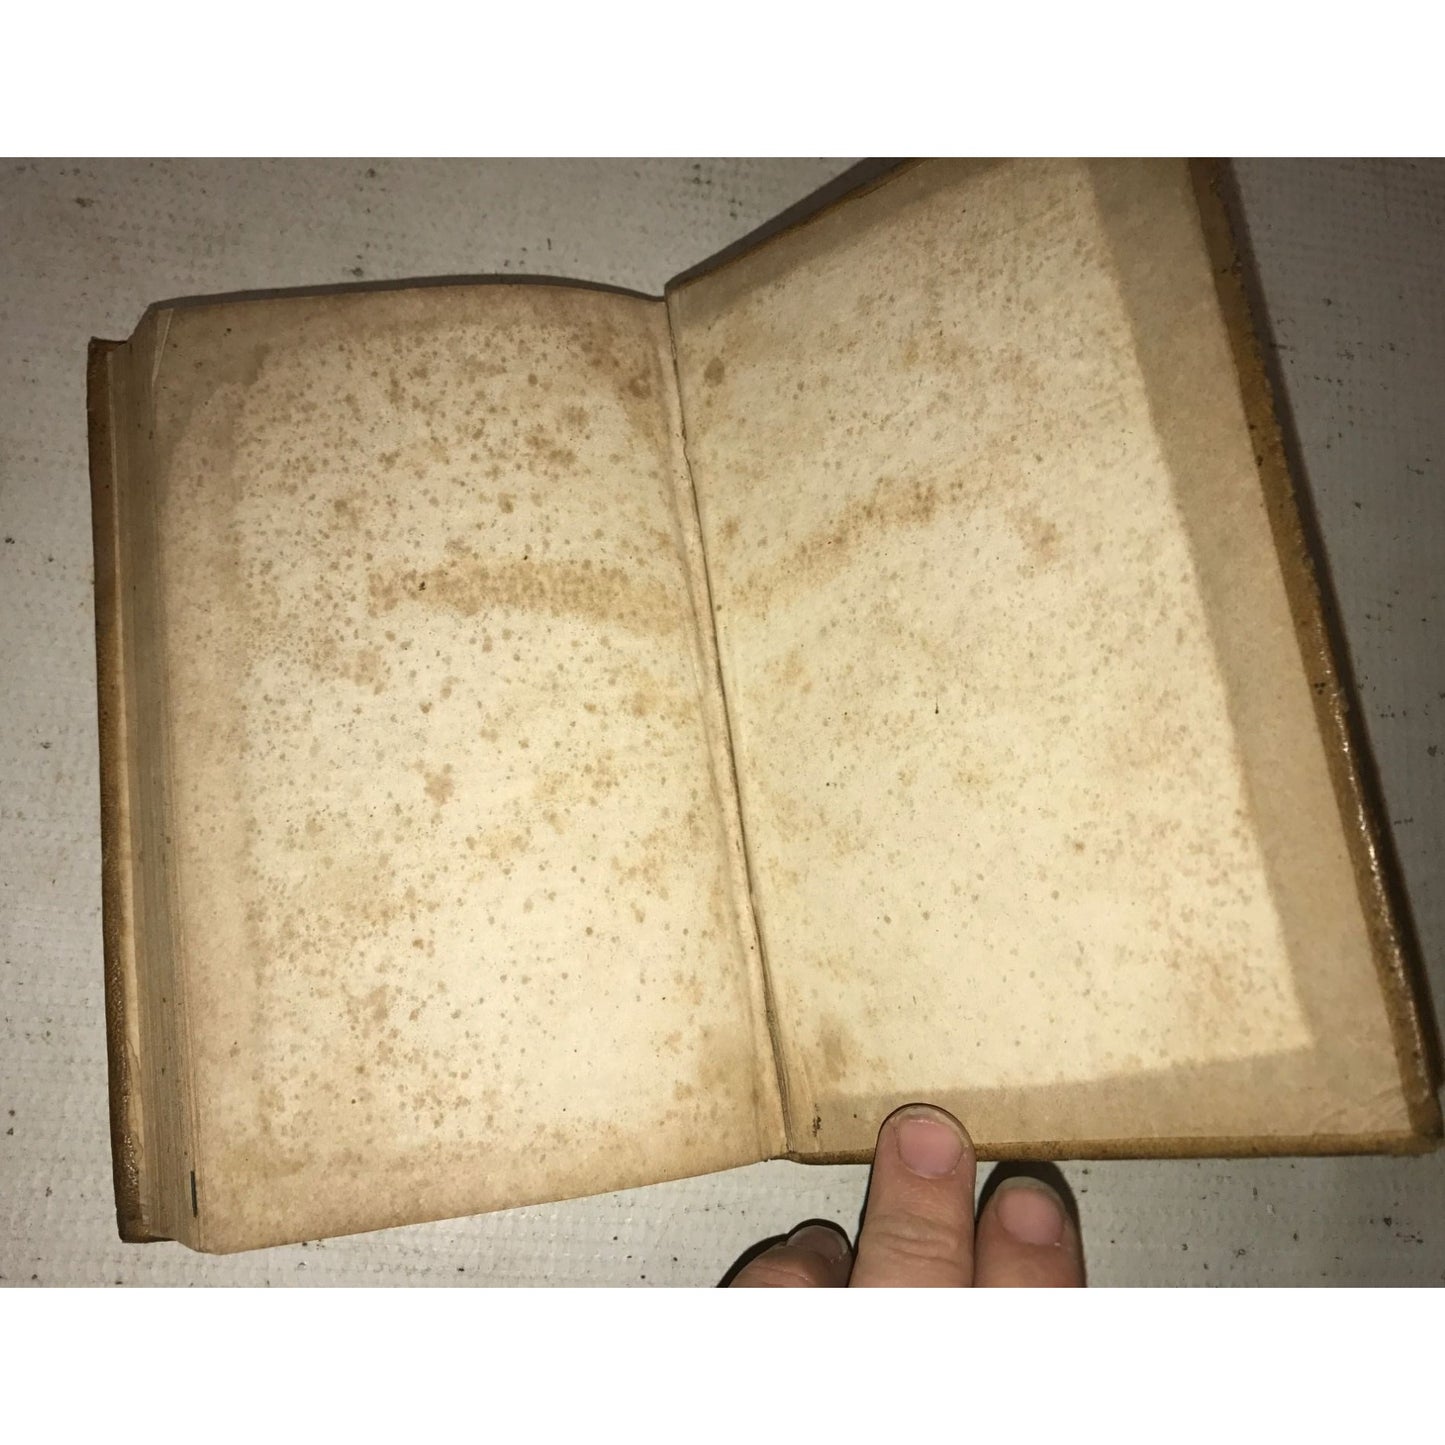 Antique Grammar Textbook - Samuel Kirkham - 184 - Plaskitt and cugle